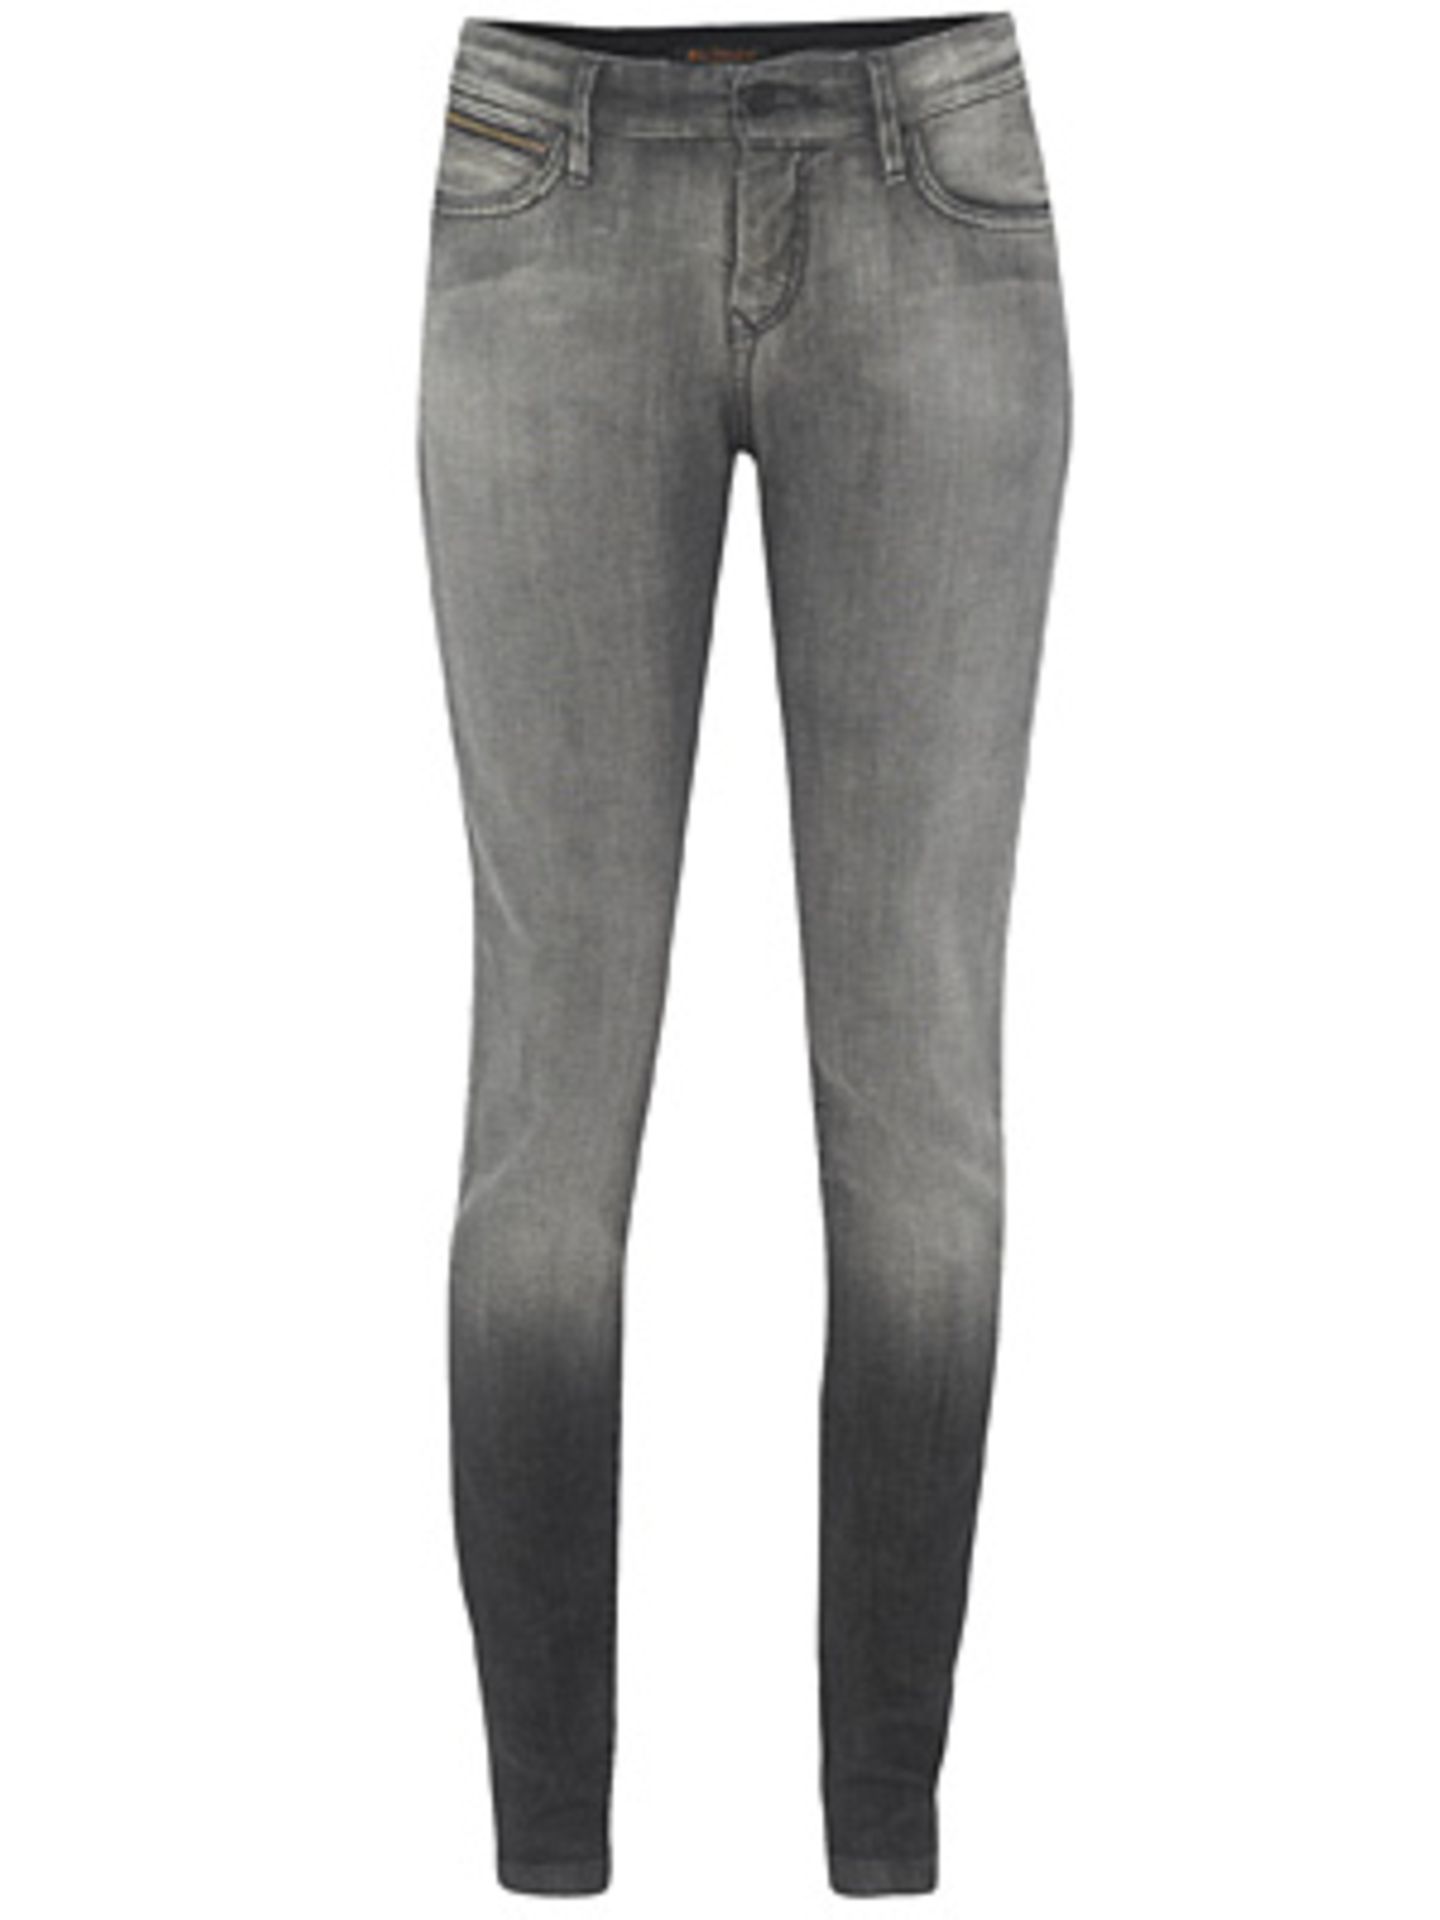 Schwarze Skinny Jeans von Ben Sherman, um 100 Euro